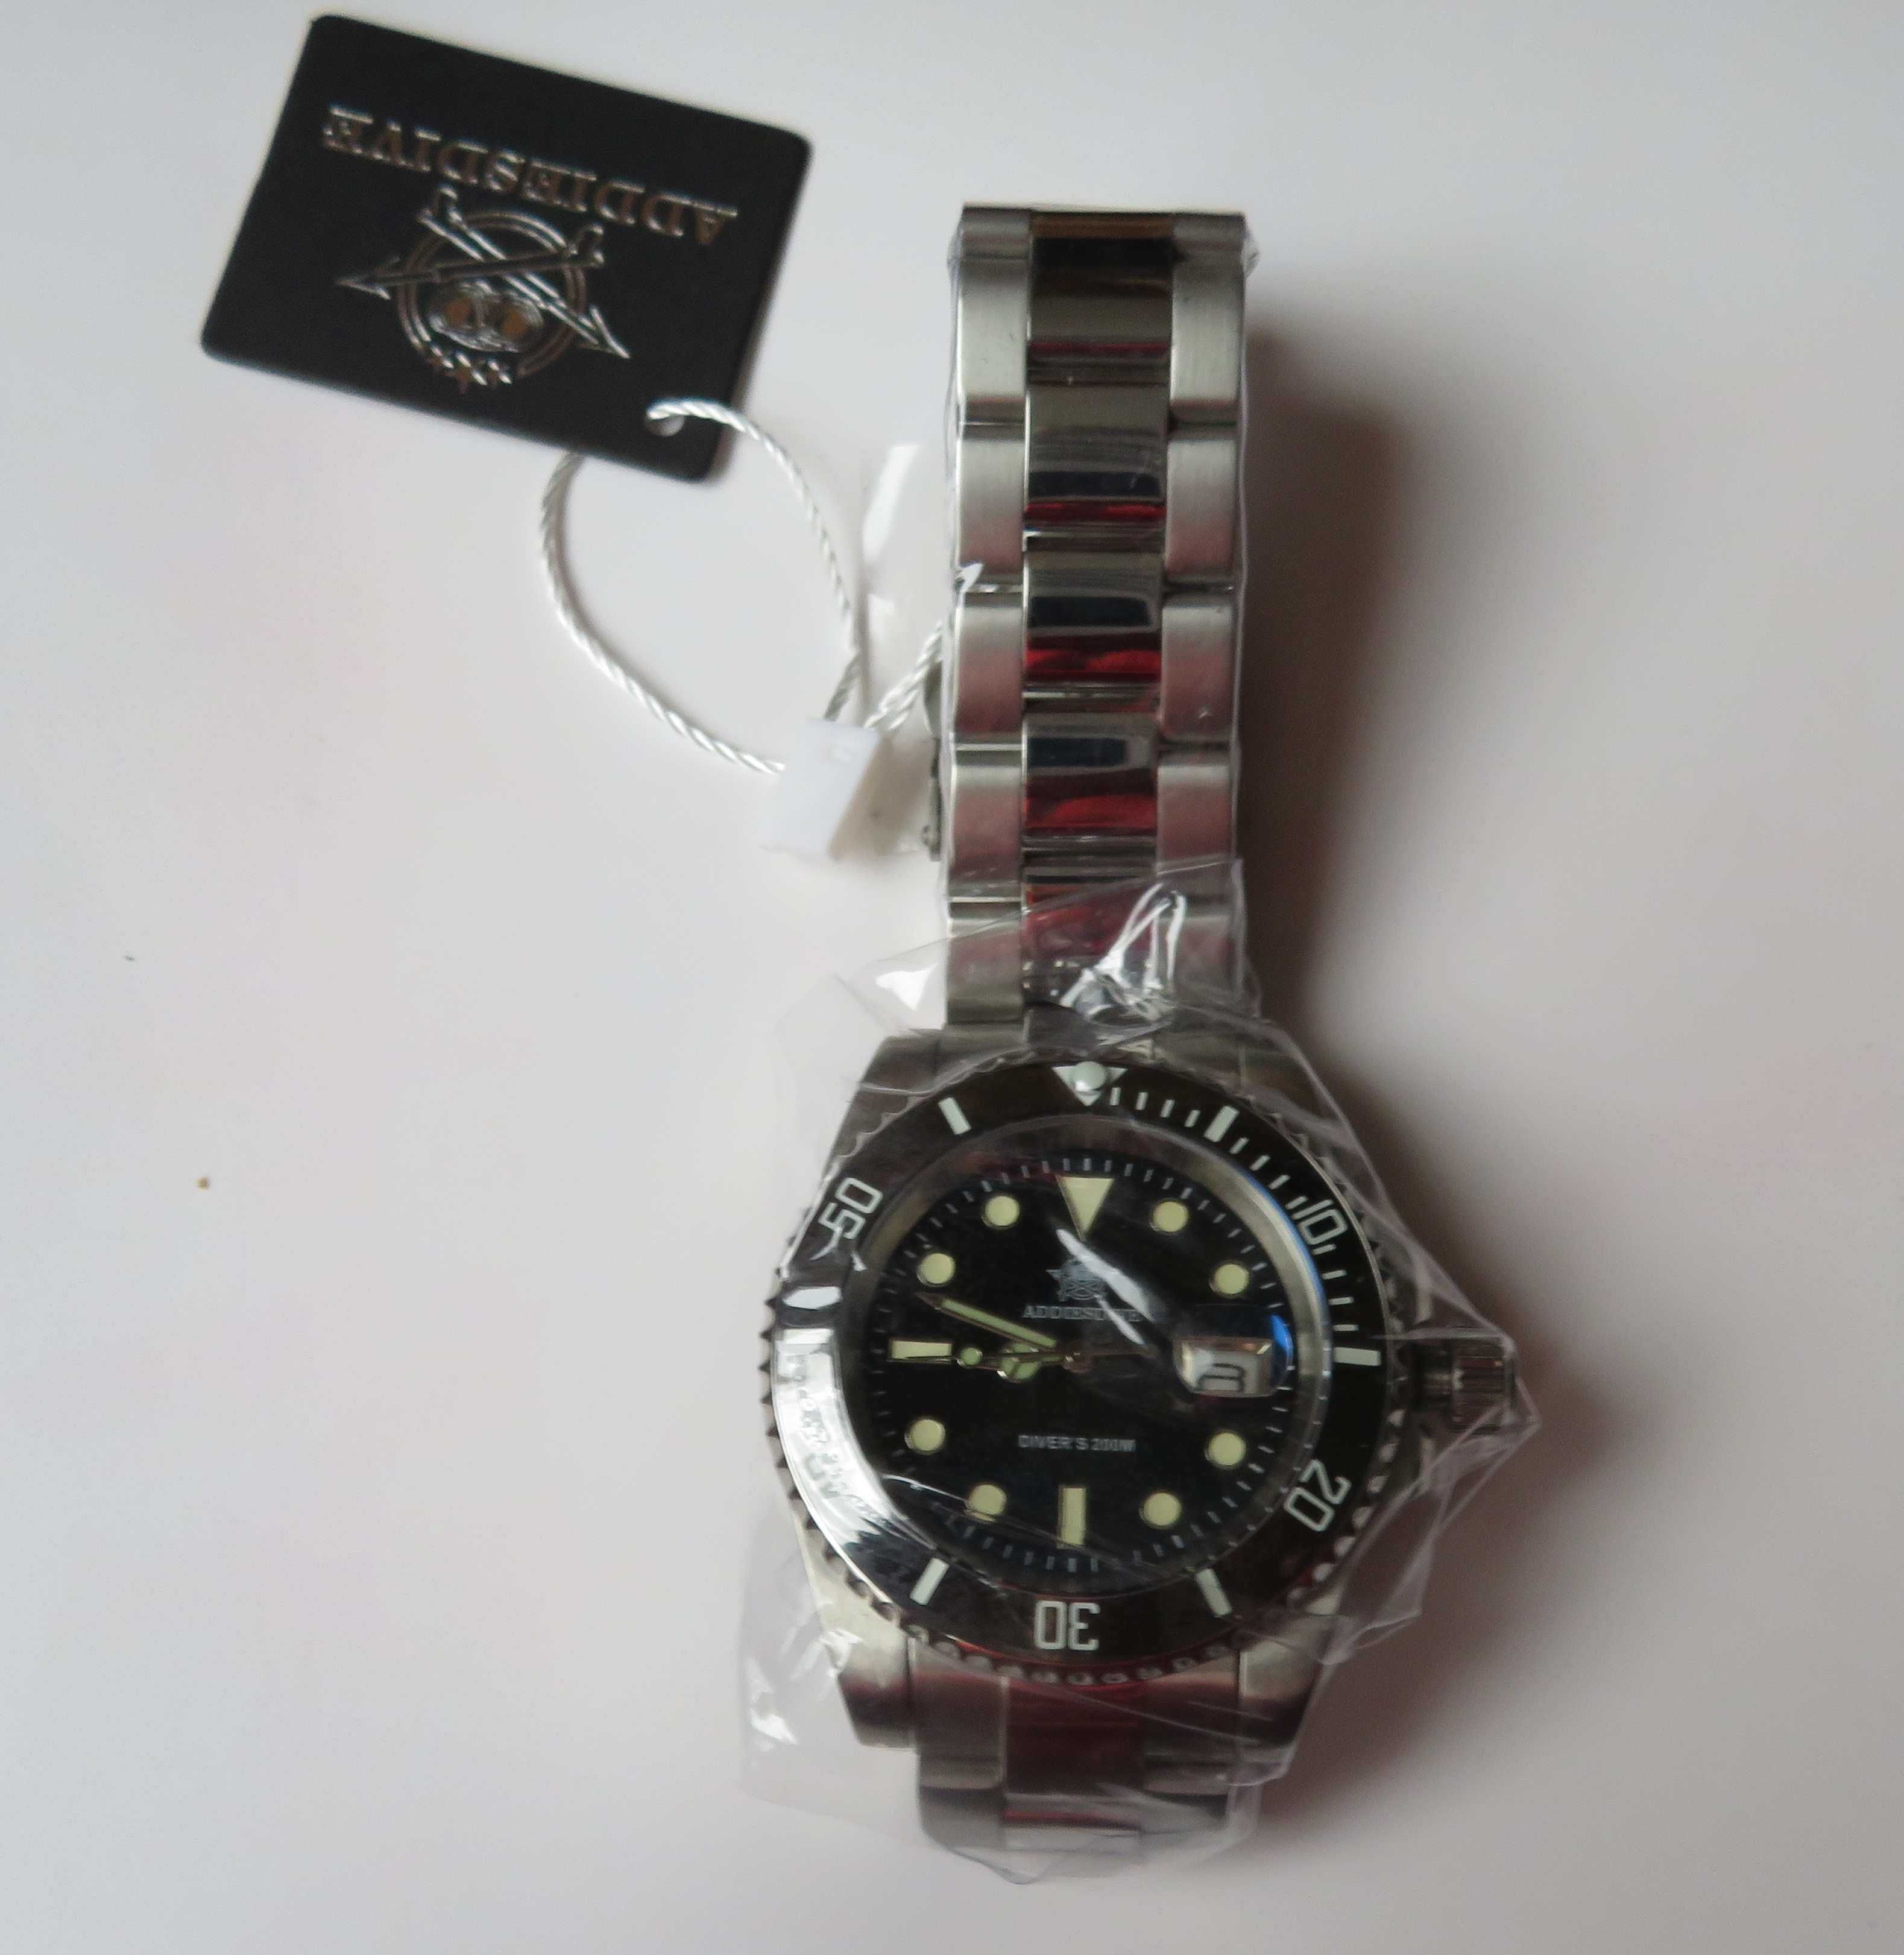 zegarek diver nurek Addiesdive stalowy wr 200 nowy w foliach czarny